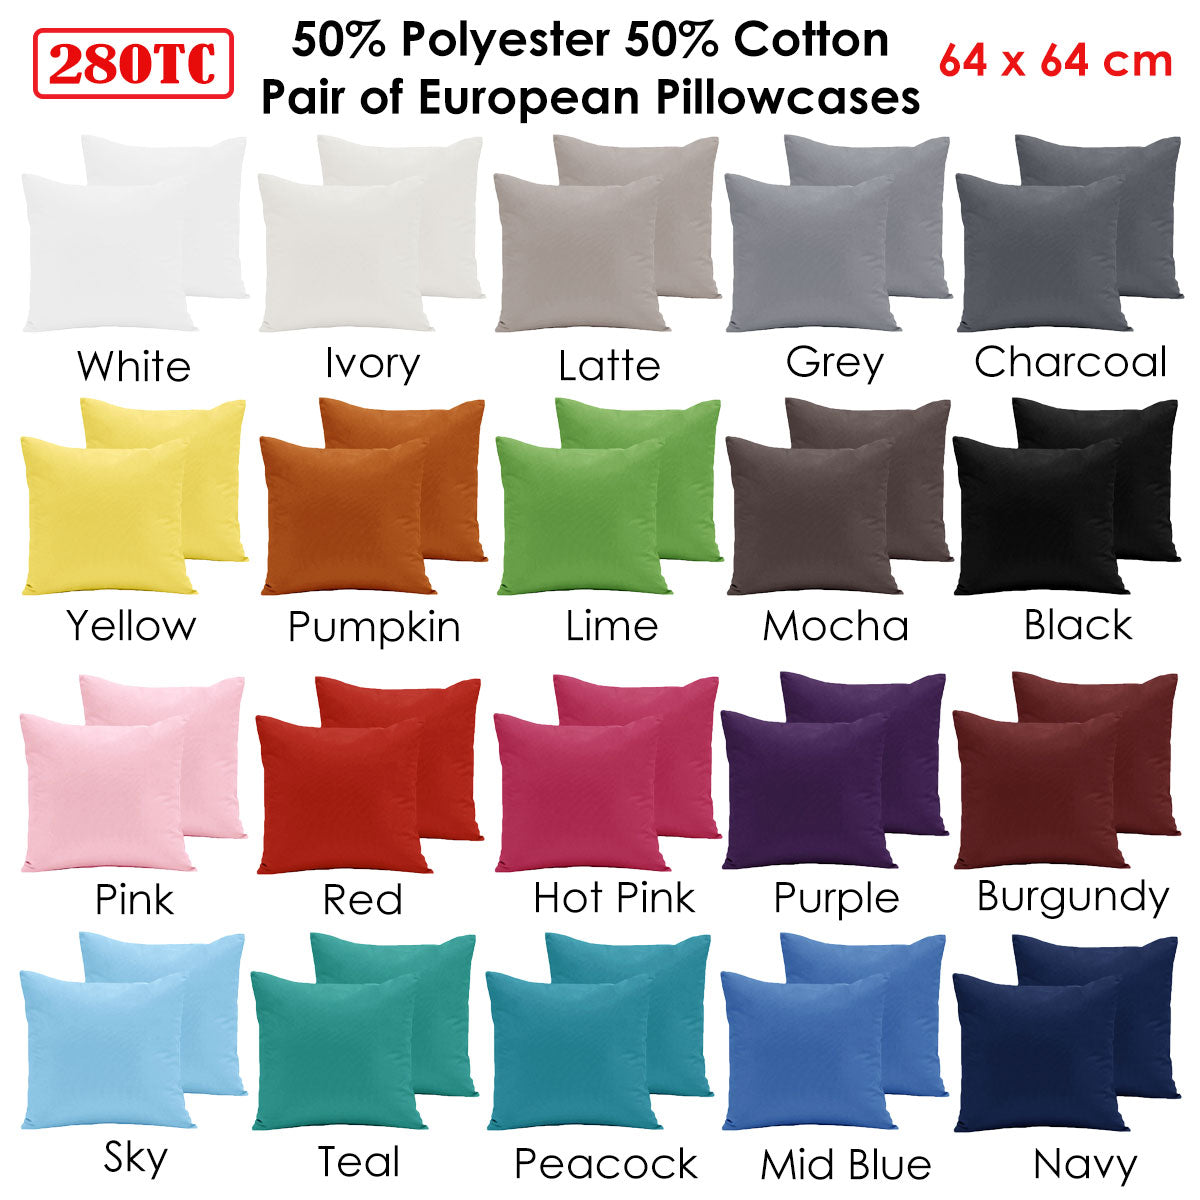 Pair of  280TC Polyester Cotton European Pillowcases White